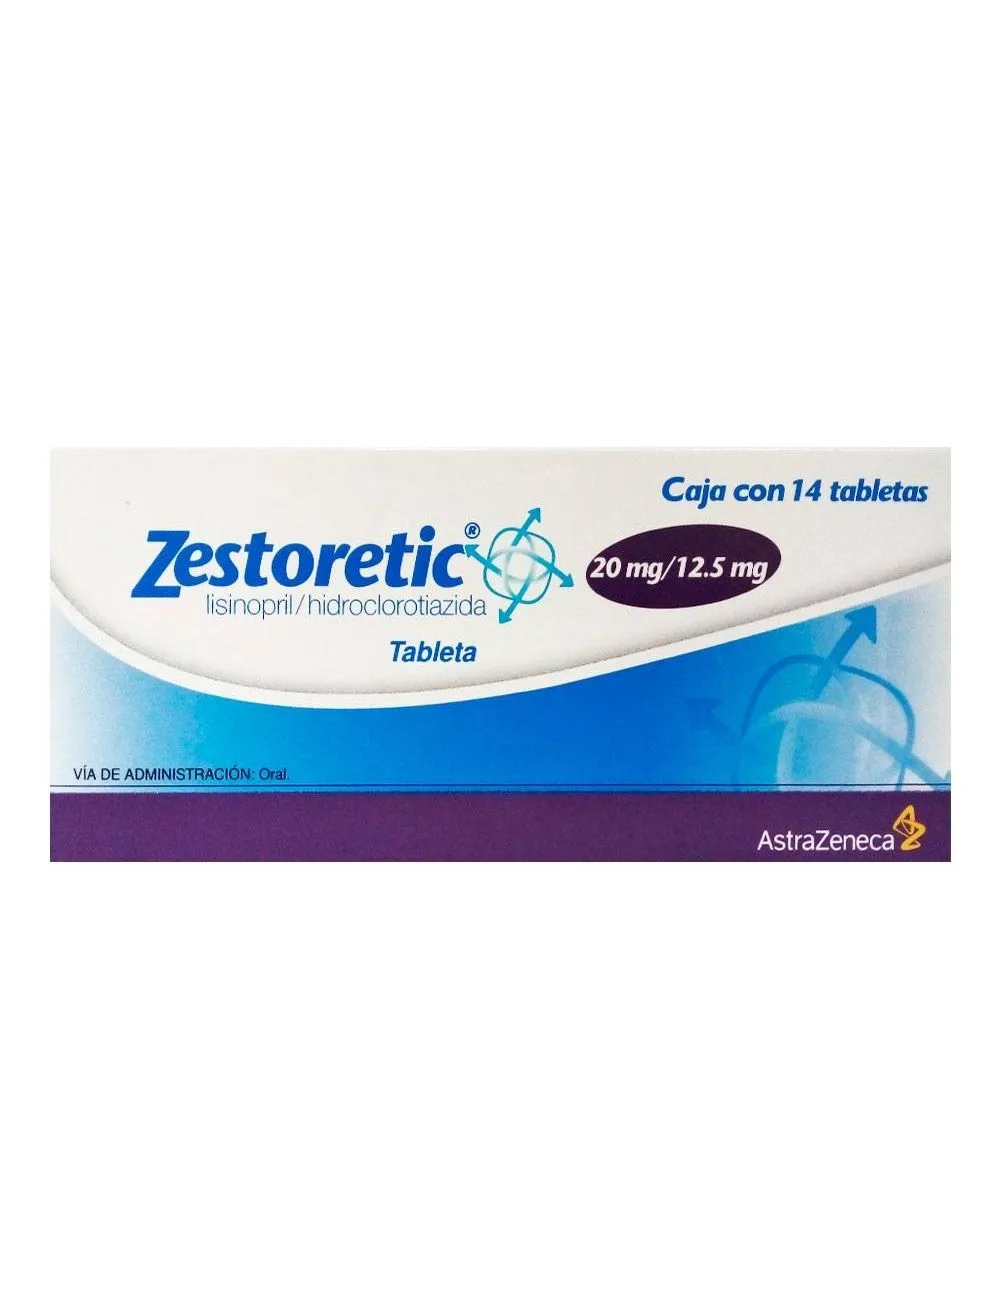 Comprar Zestoretic 20/12.5 Mg Con 14 Tabletas